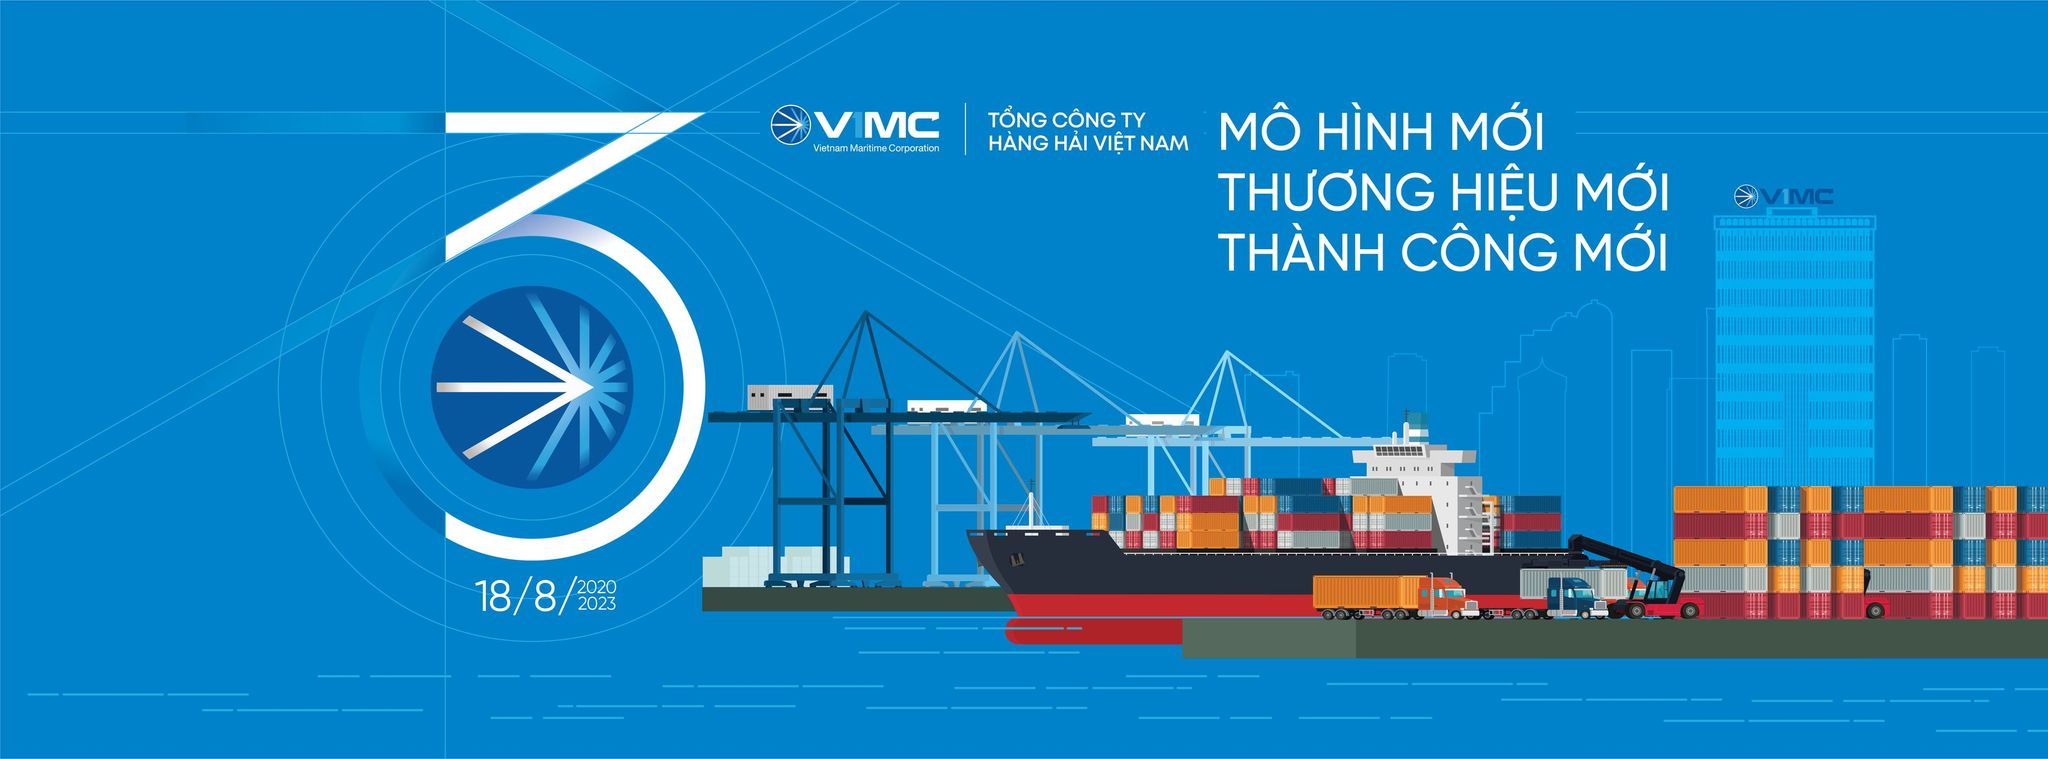 Tổng công ty Hàng hải Việt Nam - VIMC